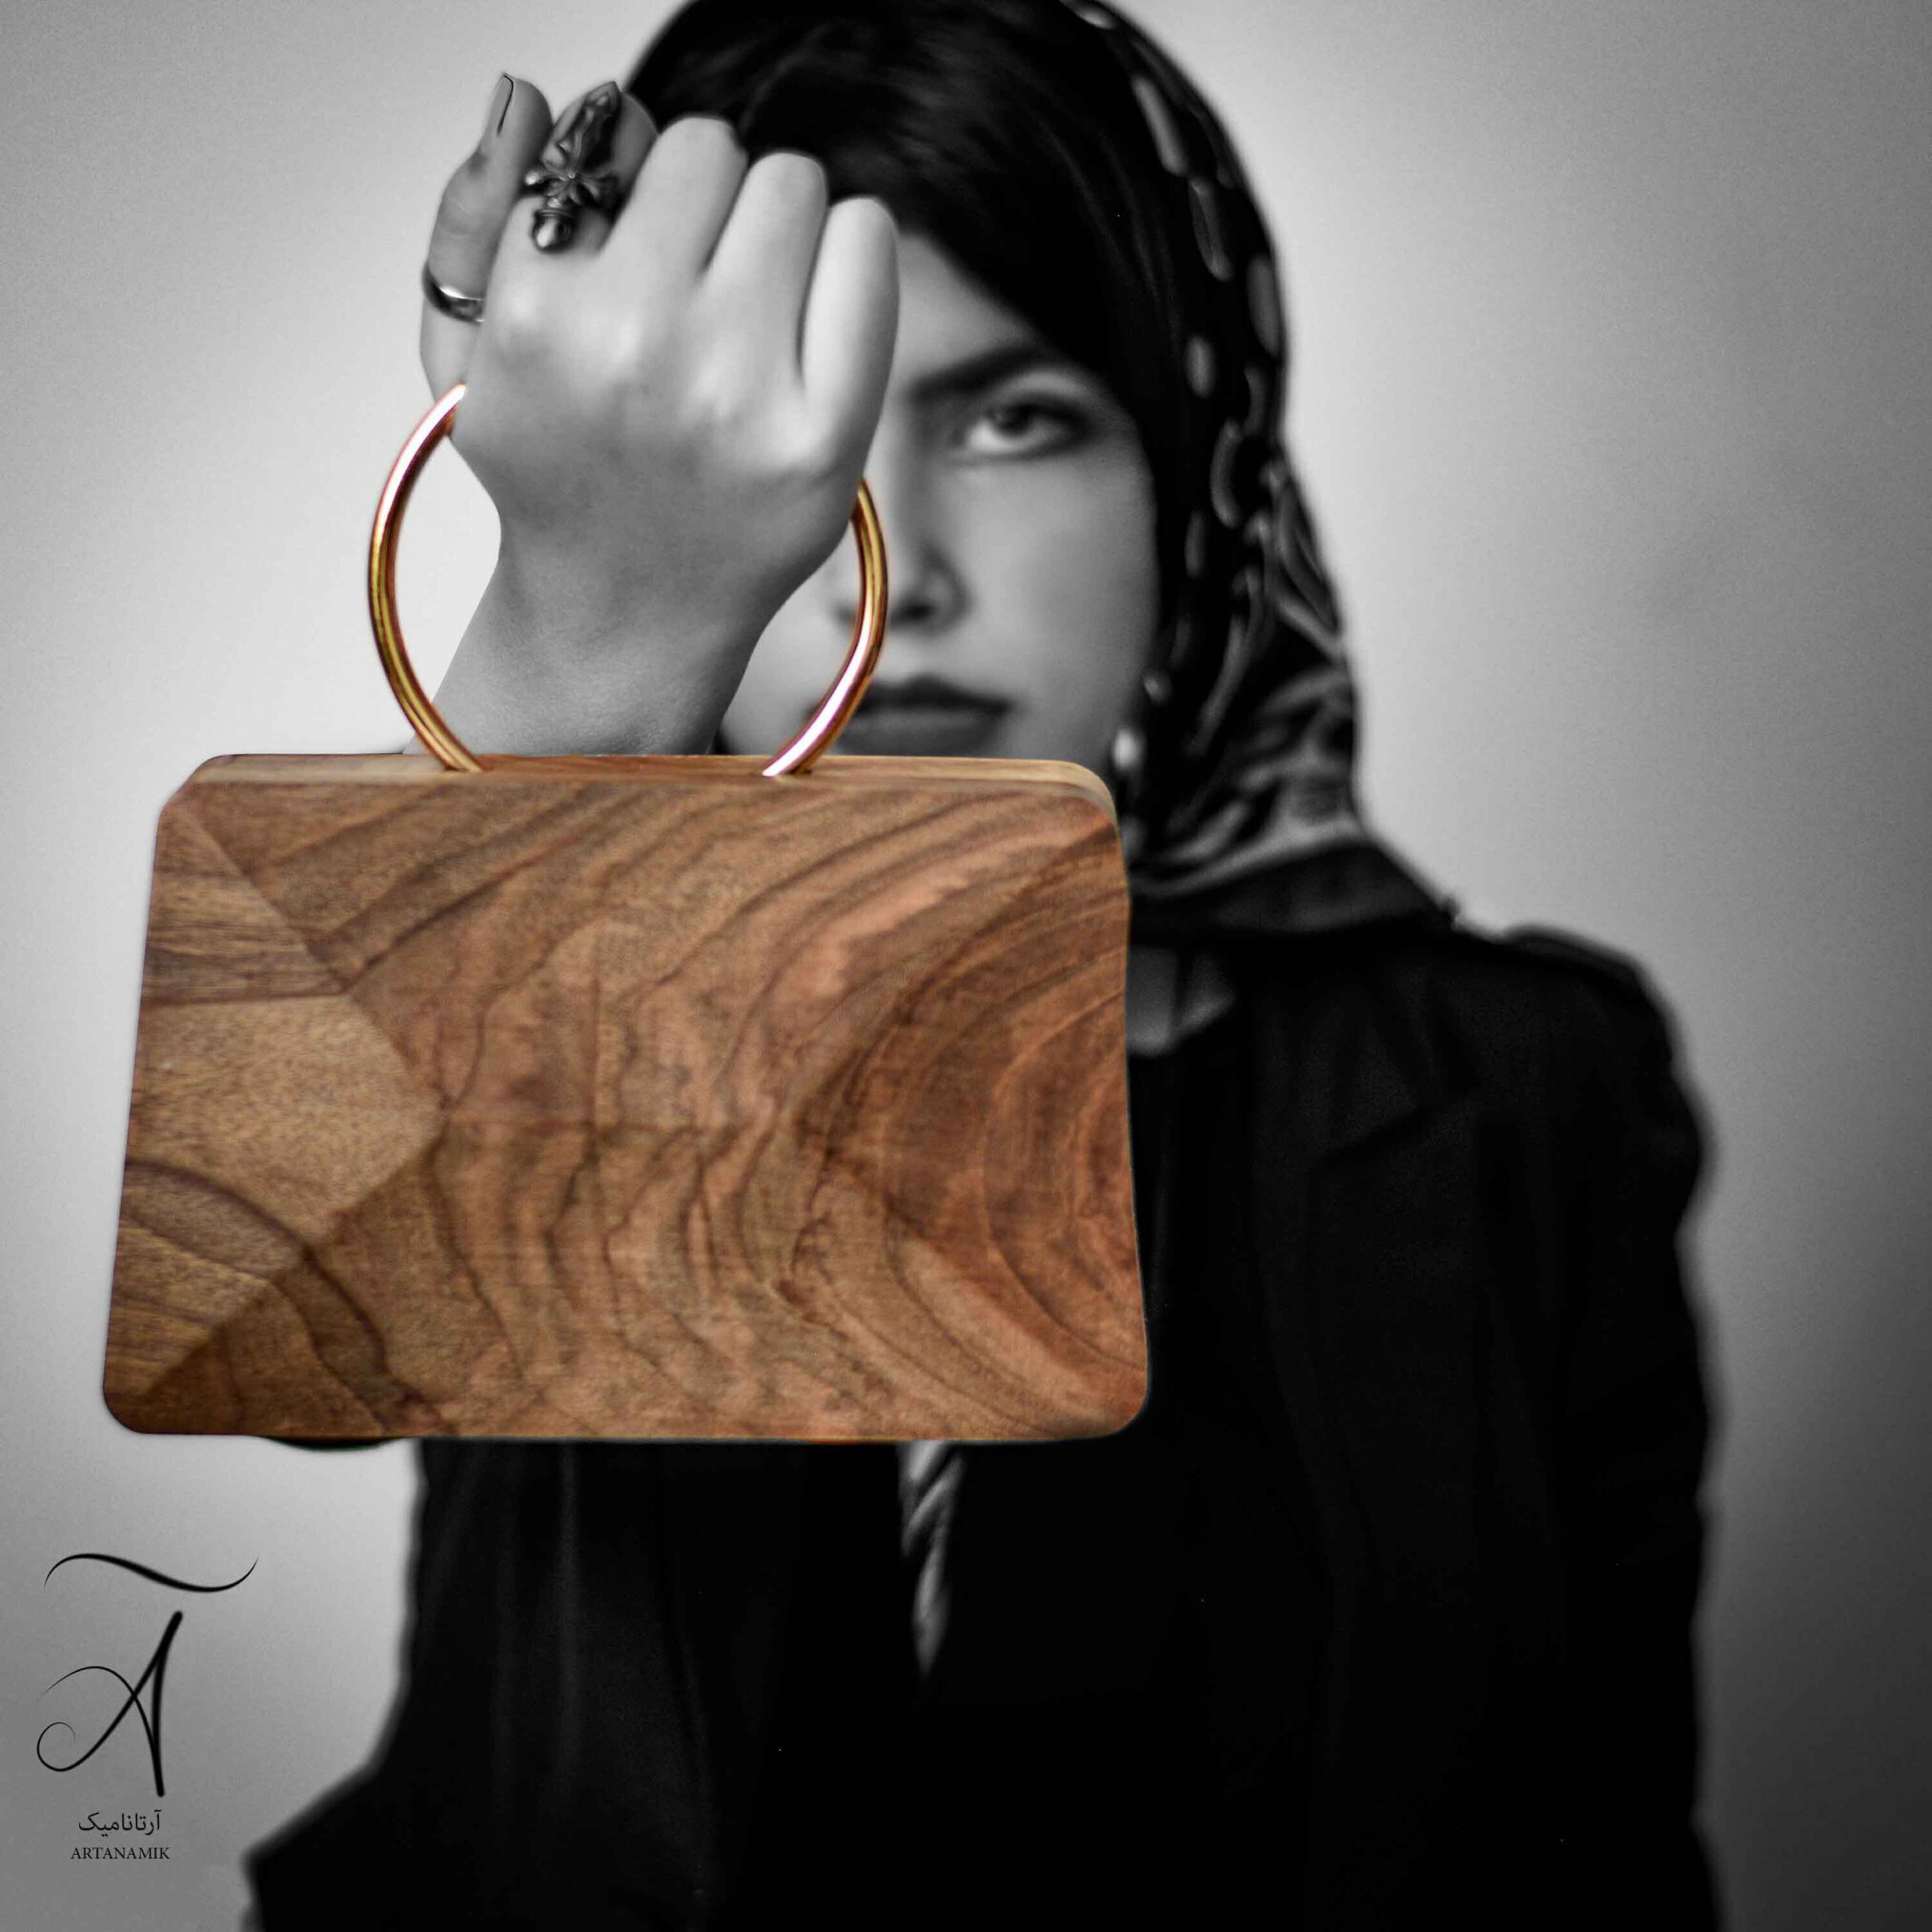  کیف چوبی زنانه حلقه دار | فروشگاه آرتانامیک 